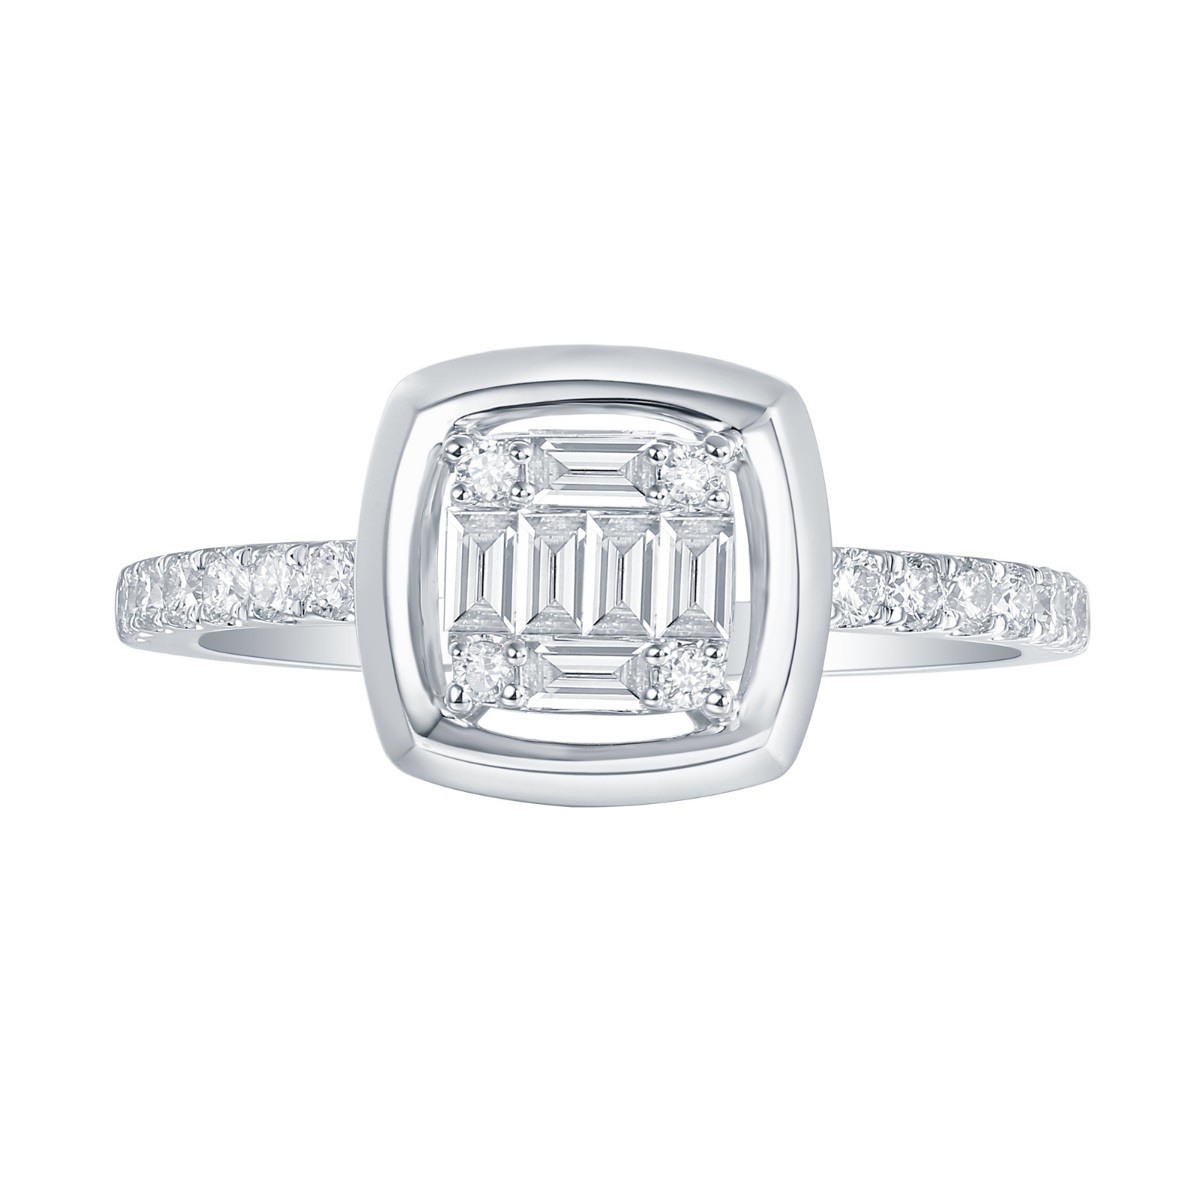 R36572WHT – 18K White Gold  Diamond Ring, 0.45 TCW